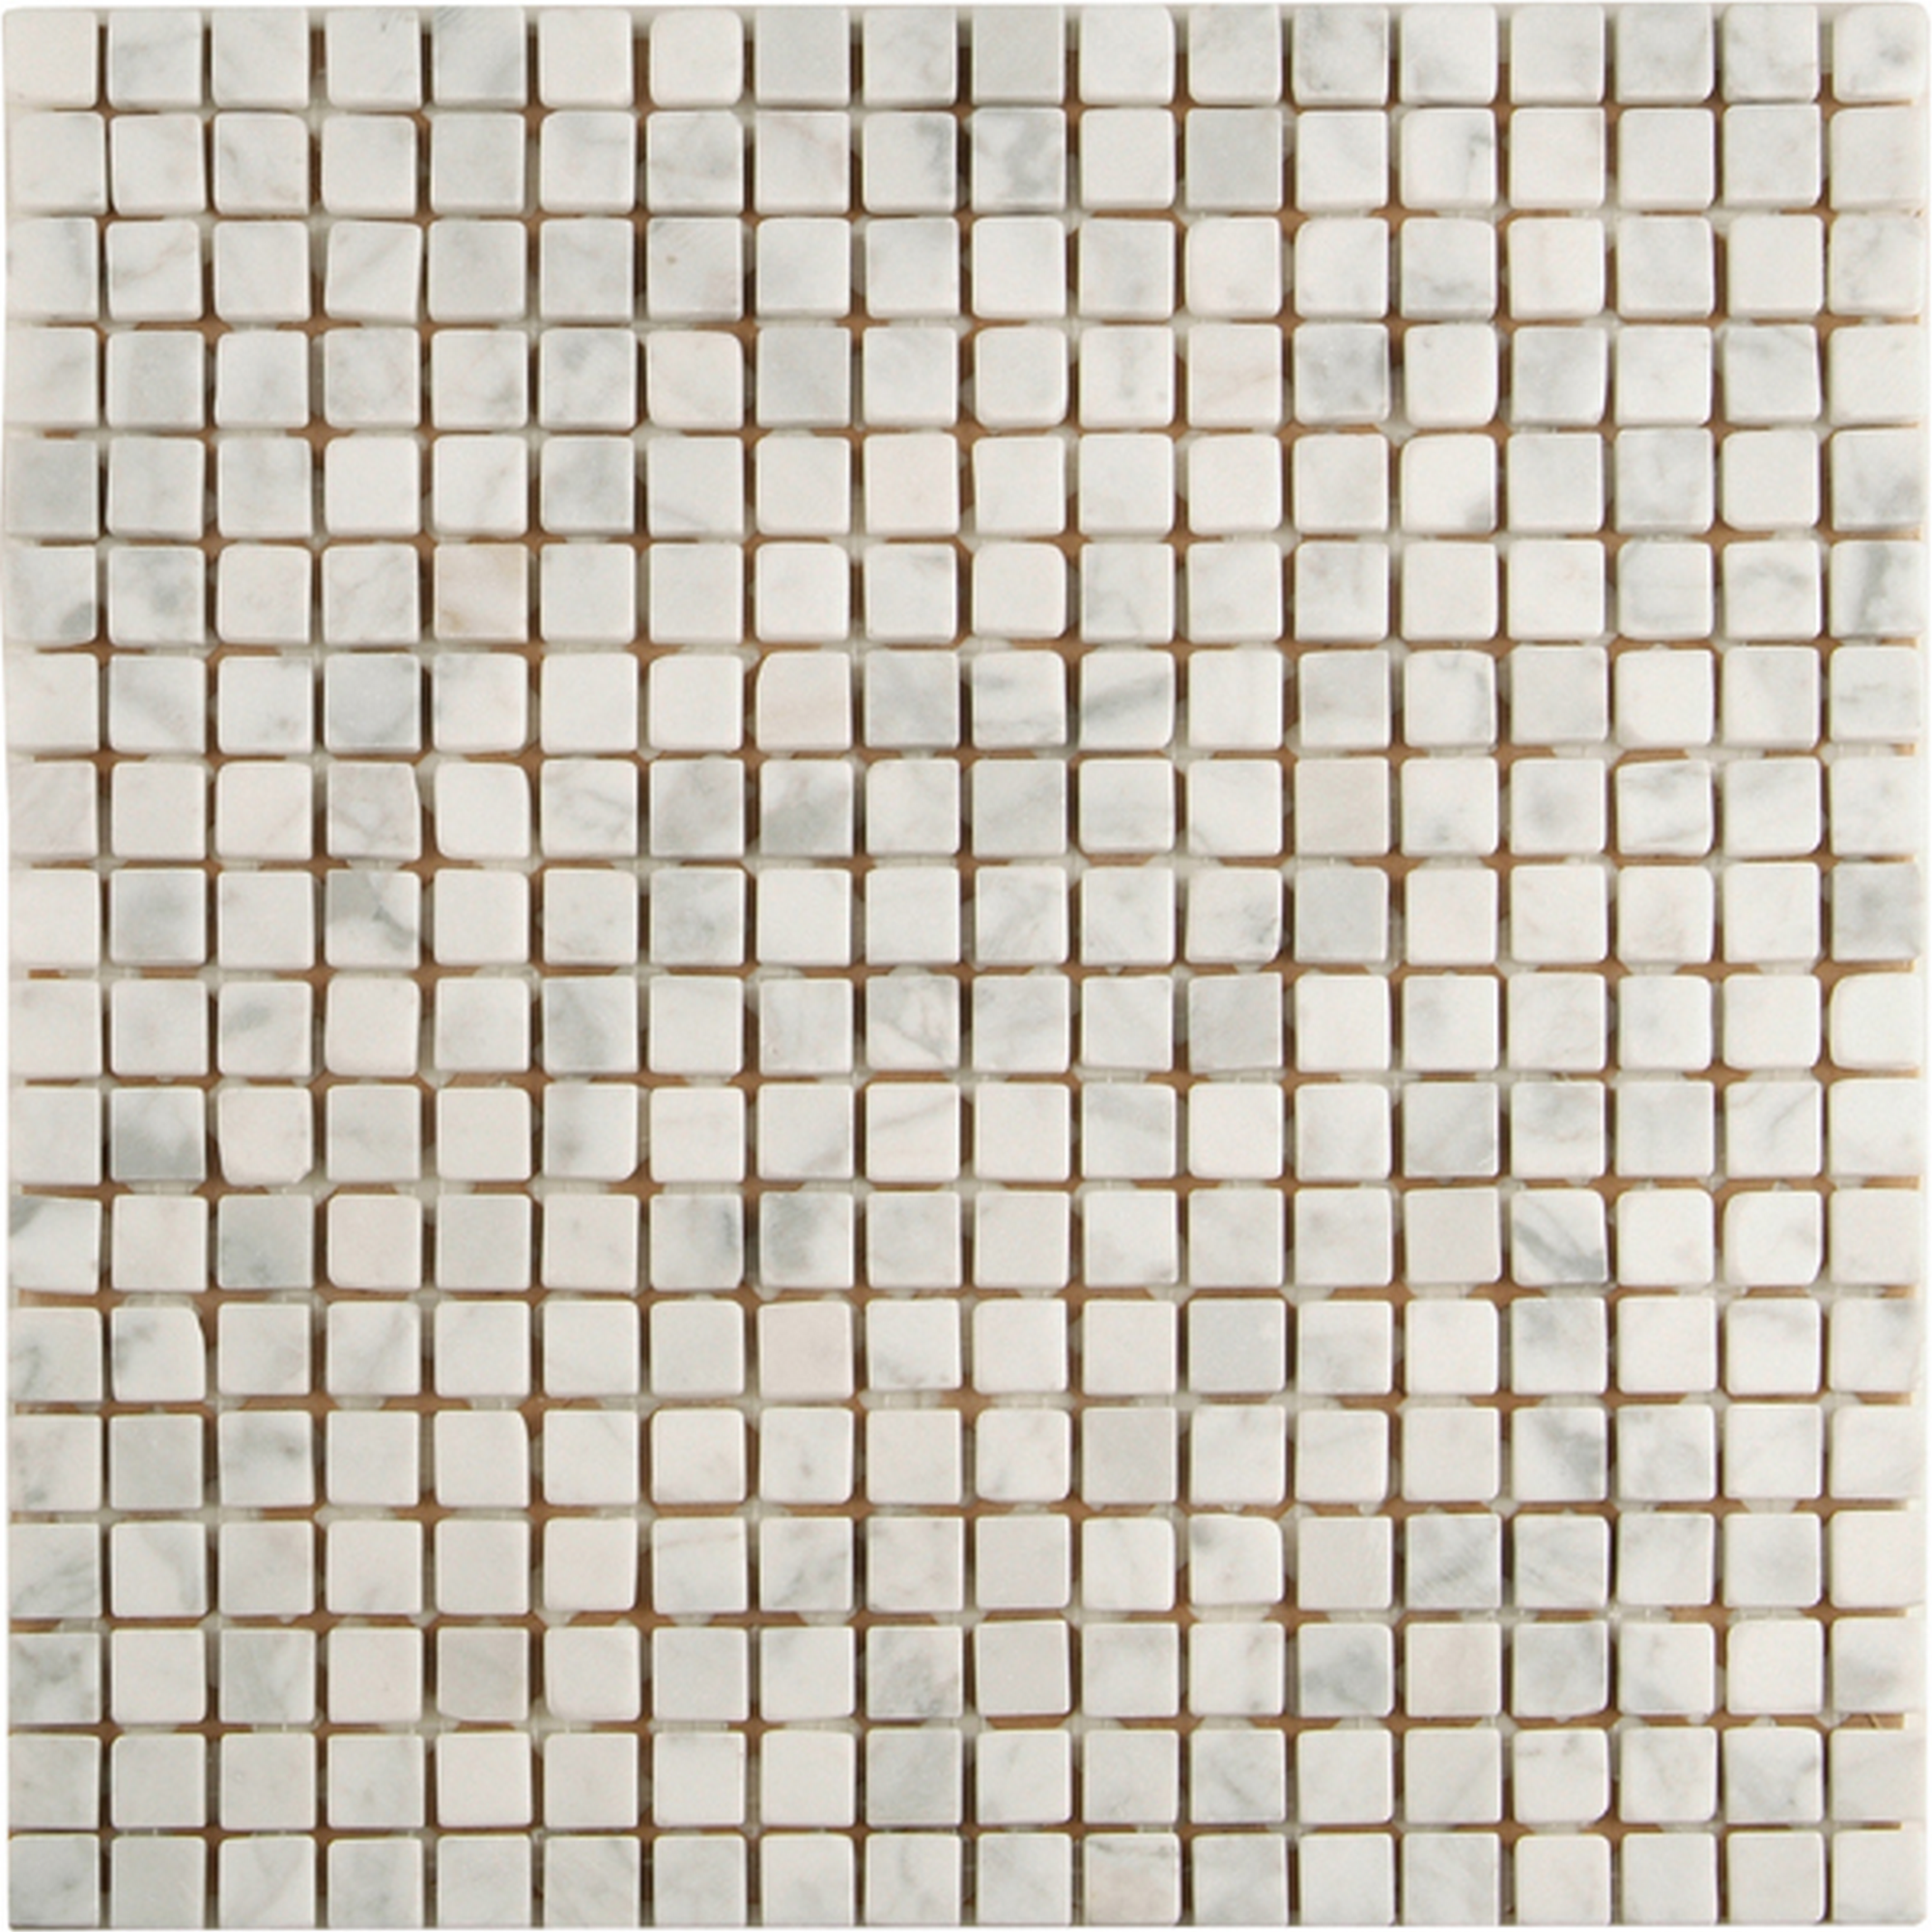 Mosaikfliese 'Carrara' Naturstein weiß 30,5 x 30,5 cm